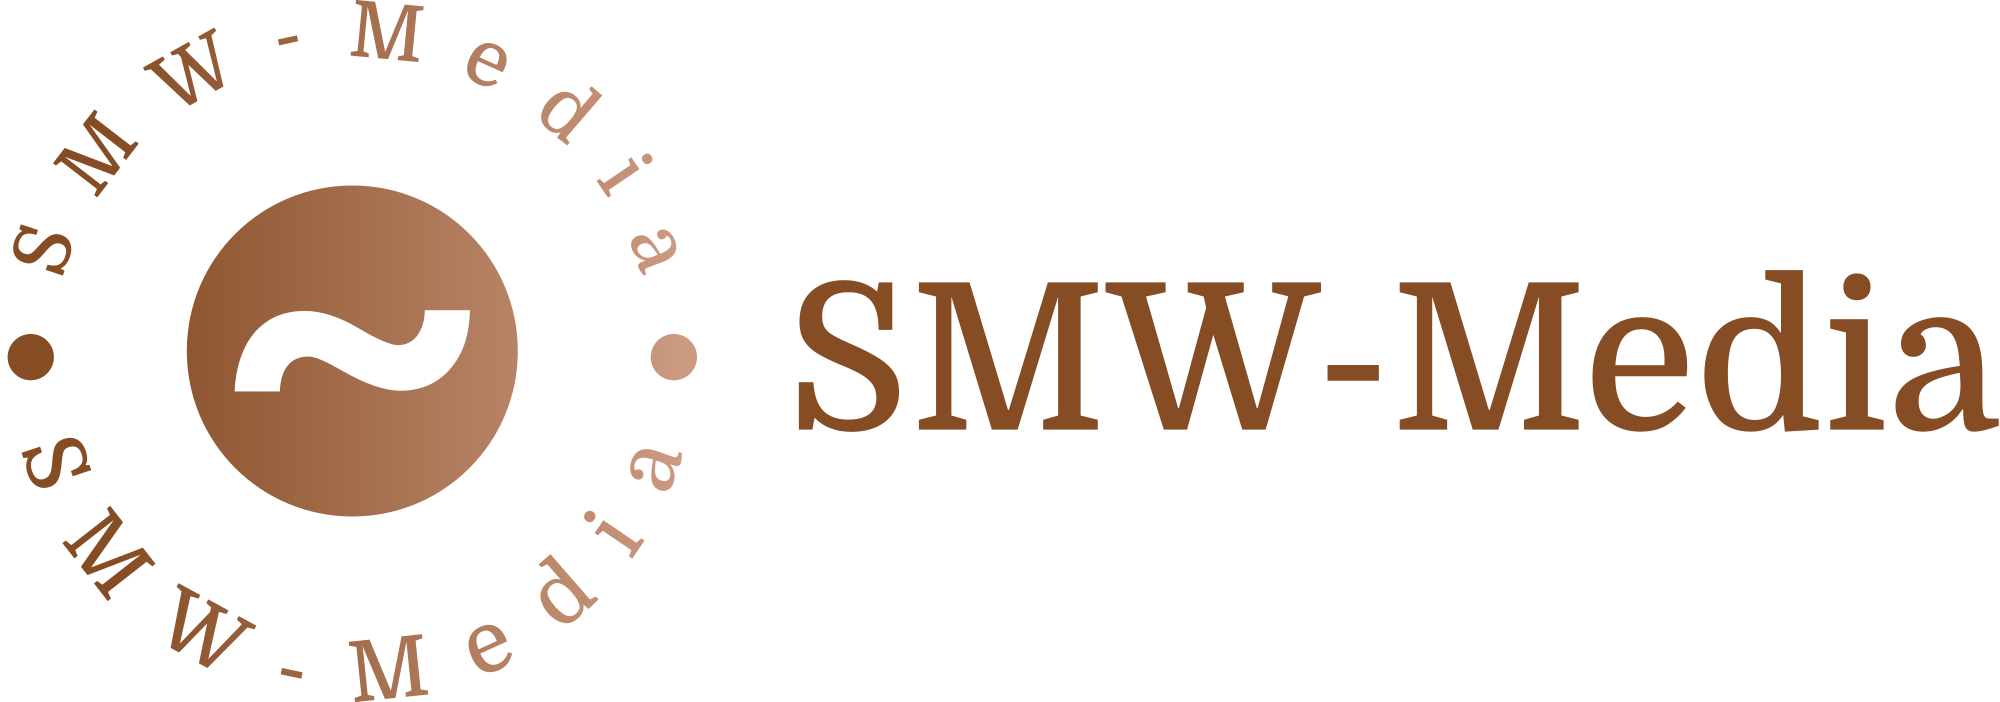 SMW-Media Logo Transparent